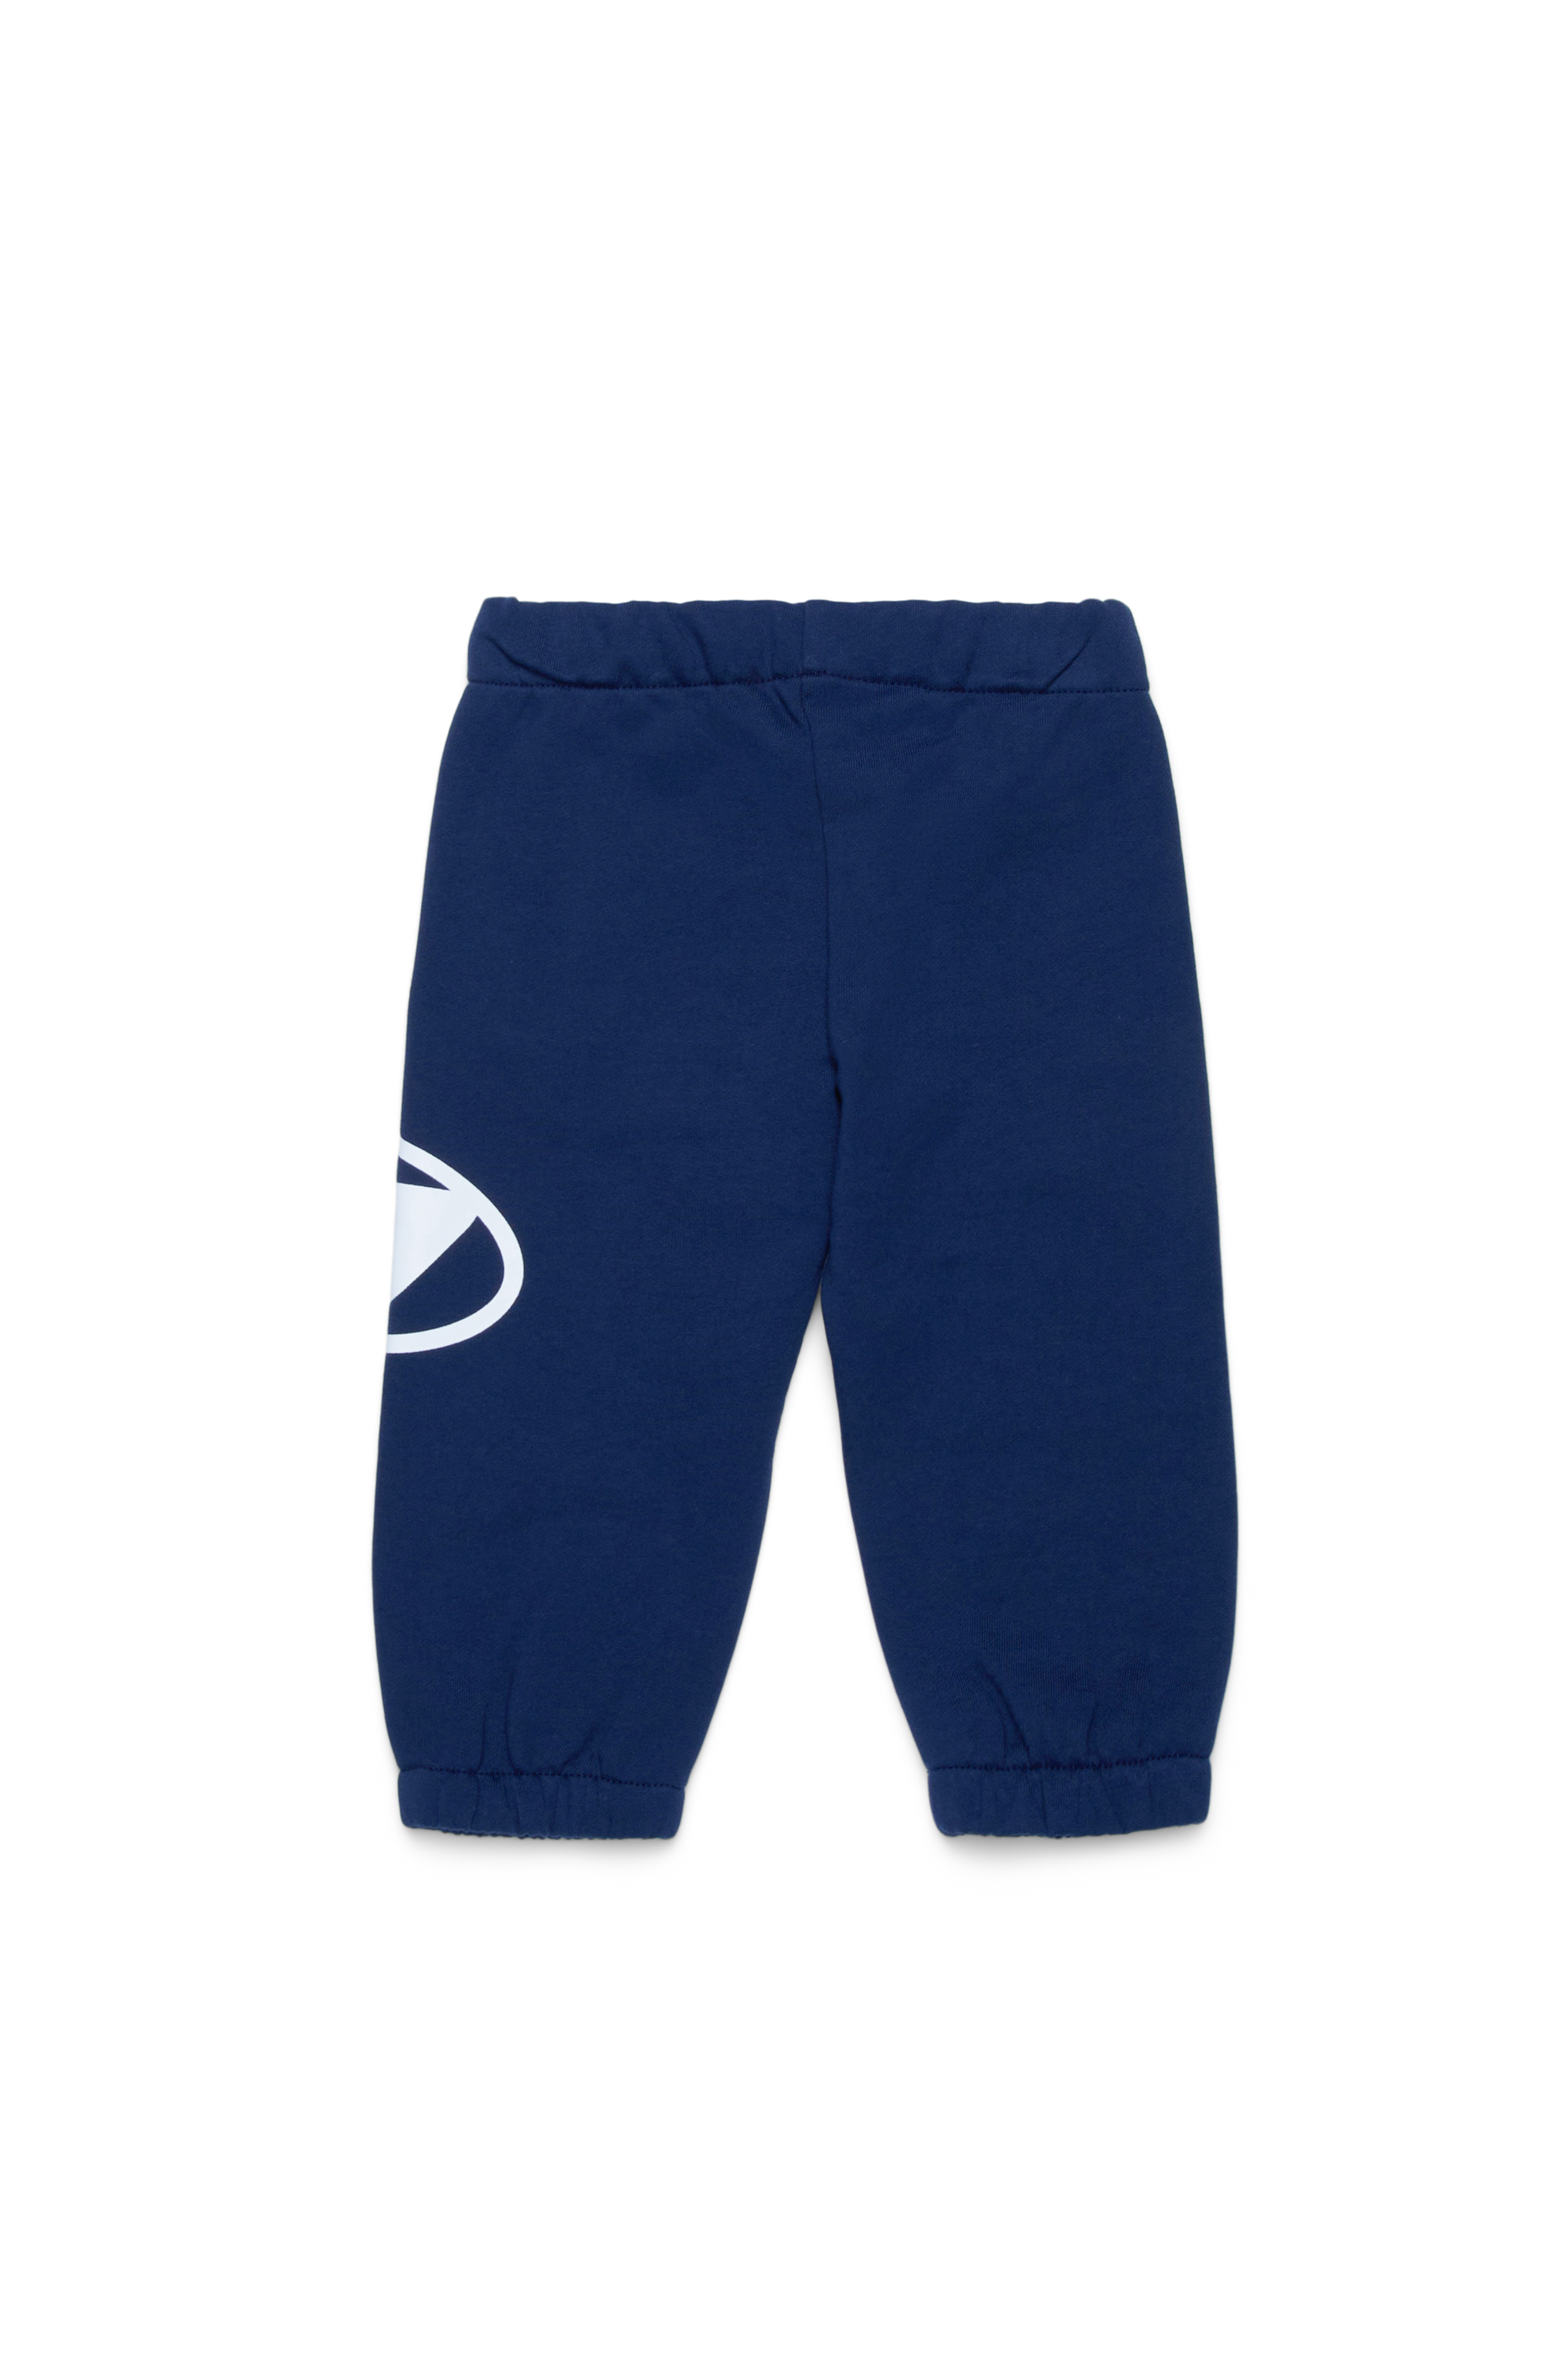 Diesel - PCERB, Unisex Pantalones deportivos con estampado Oval D in Azul marino - Image 2